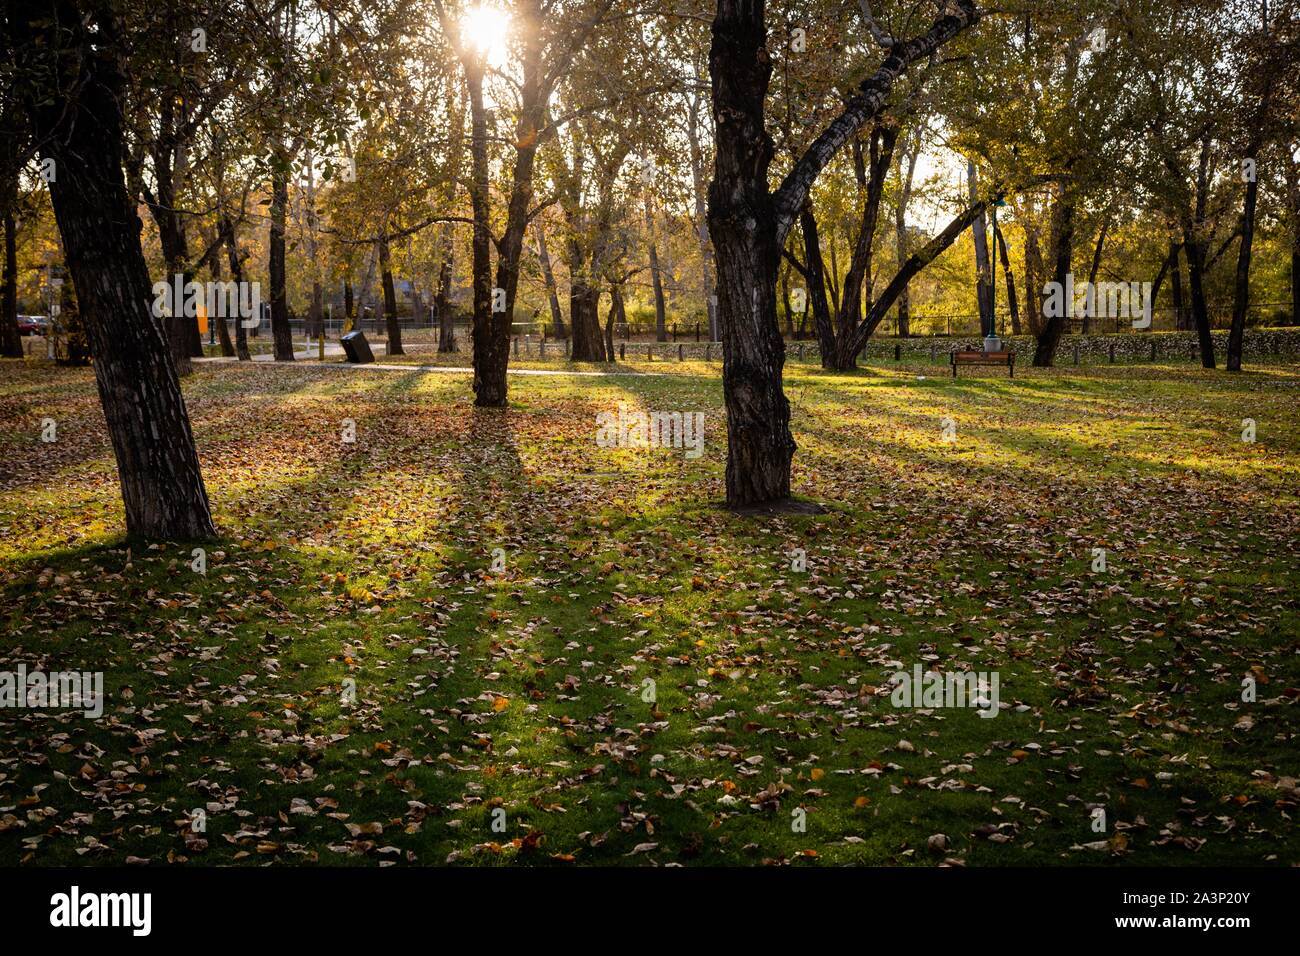 L'automne dans le parc, soleil qui brille à travers les arbres, feuilles colorées sur le sol Banque D'Images